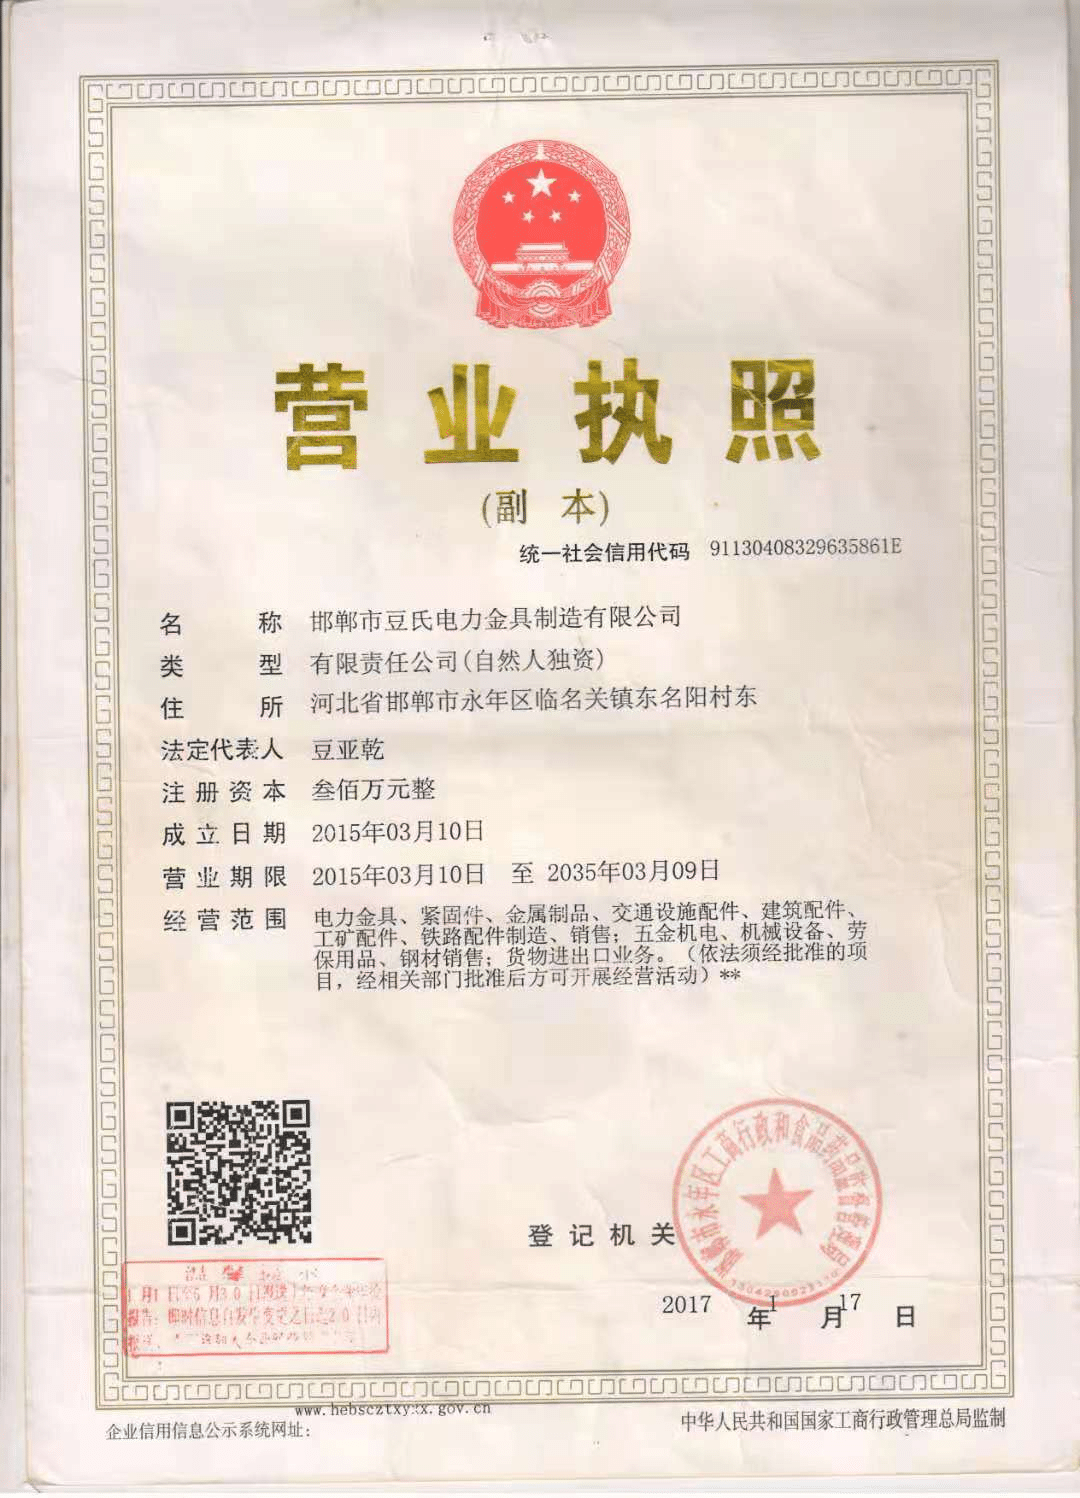 Eresertifikaat (1)